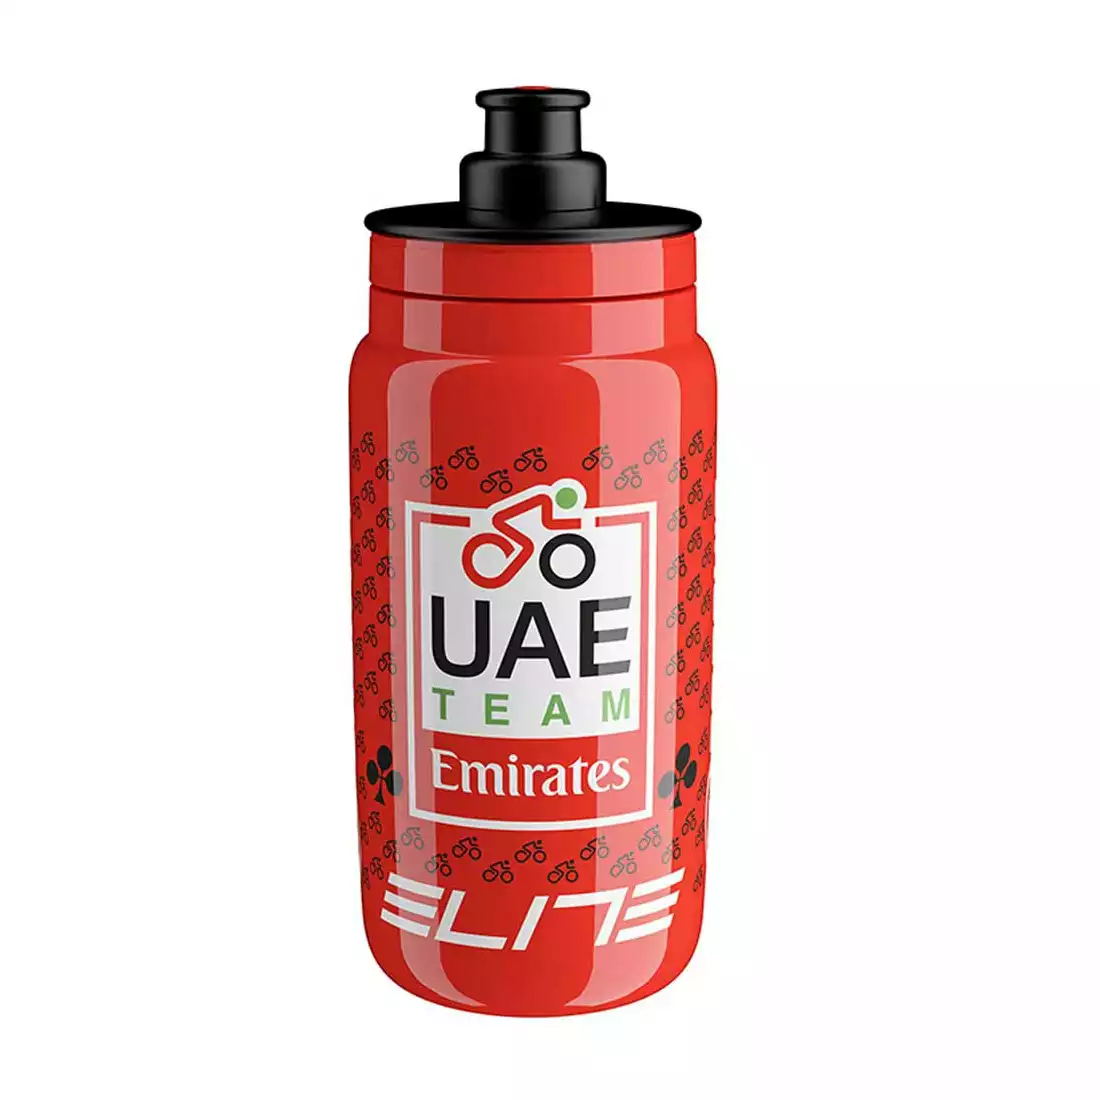 Elite FLY Teams 2022 UAE Team Emirates fahrrad wasserflasche 550ml, rot